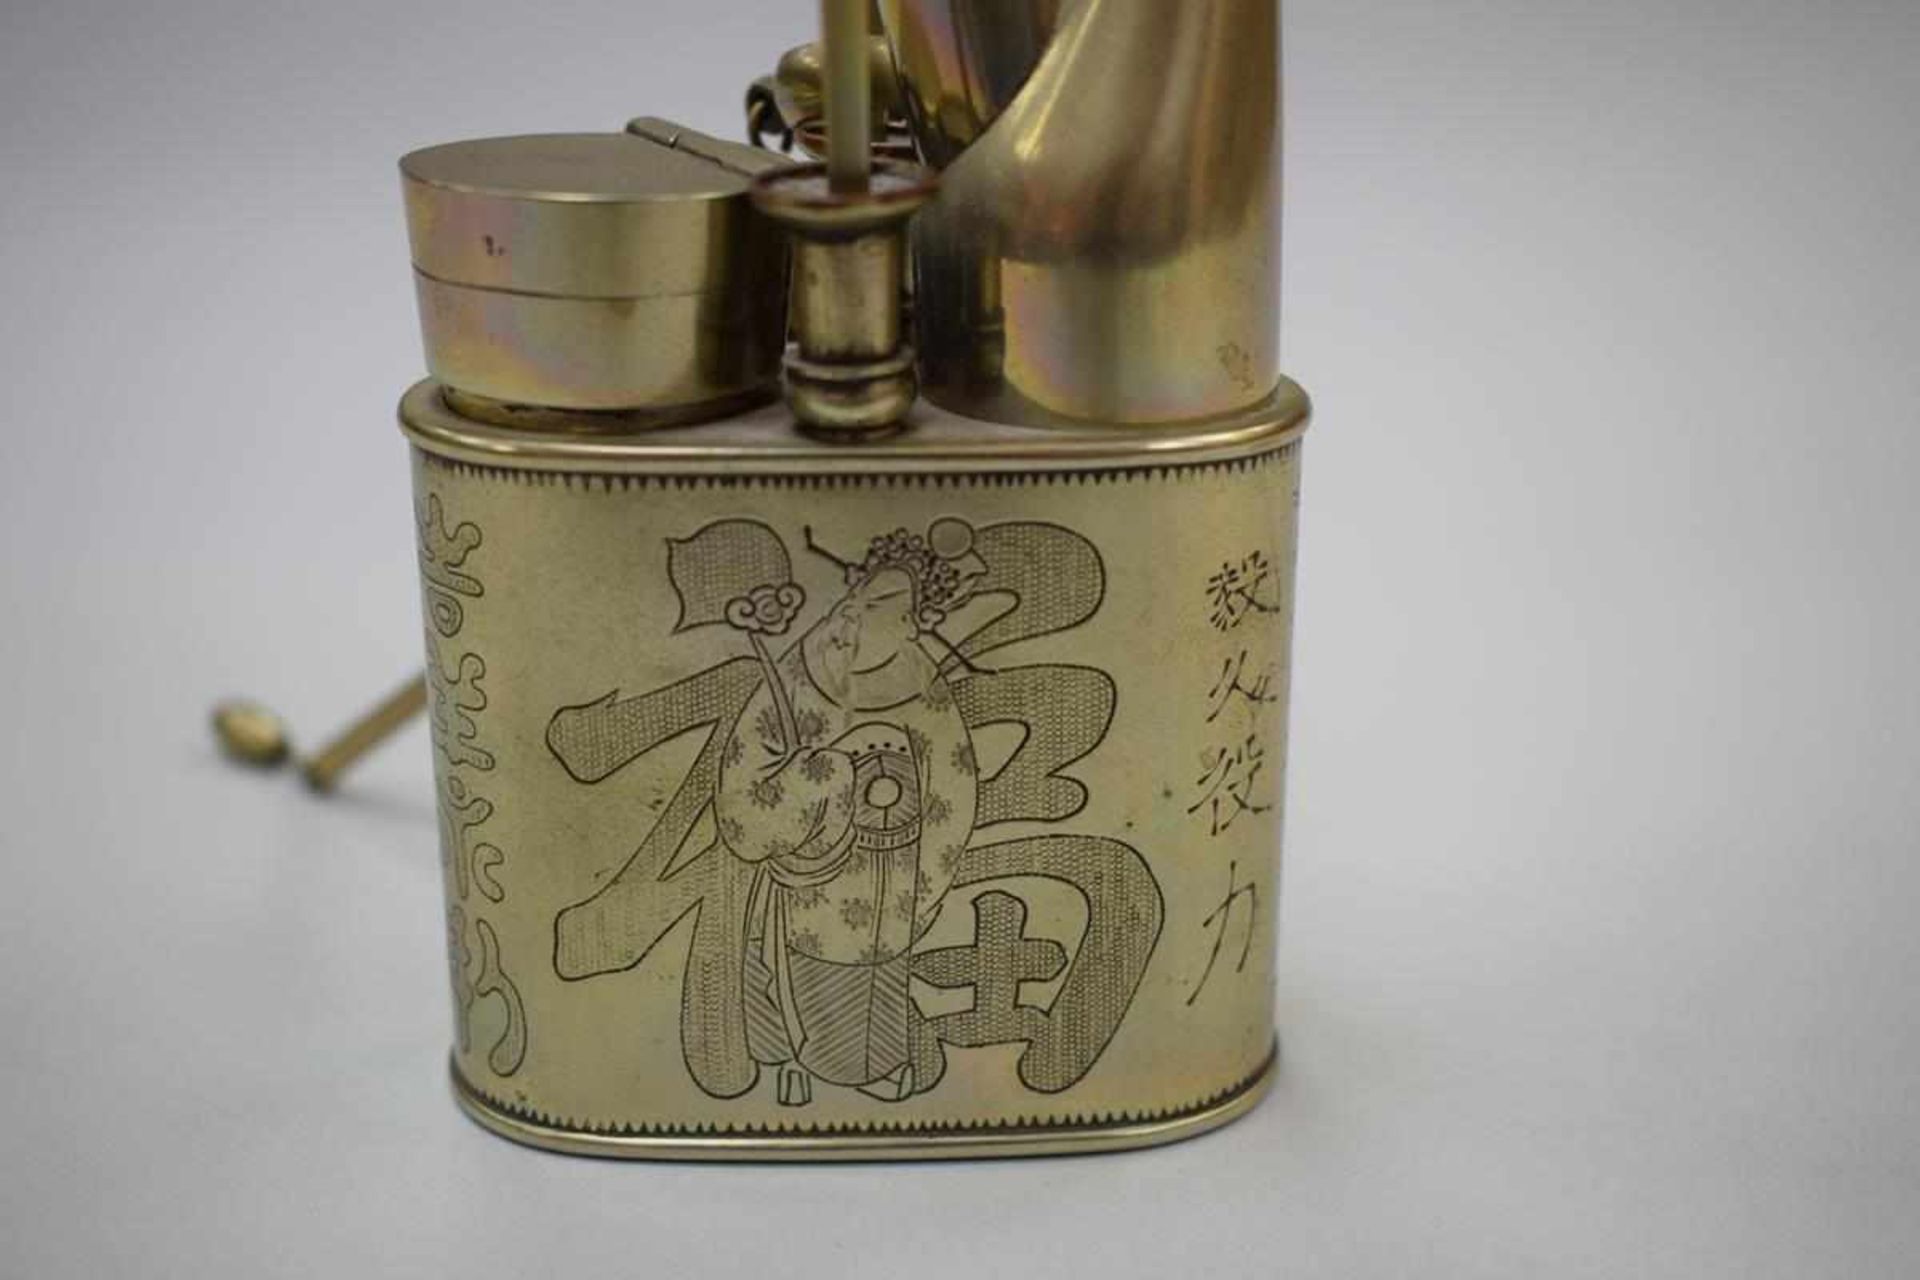 Opiumpfeife China um 1900China um 1900, Opiumpfeife Metall mit figürlicher Darstellung und - Bild 2 aus 5